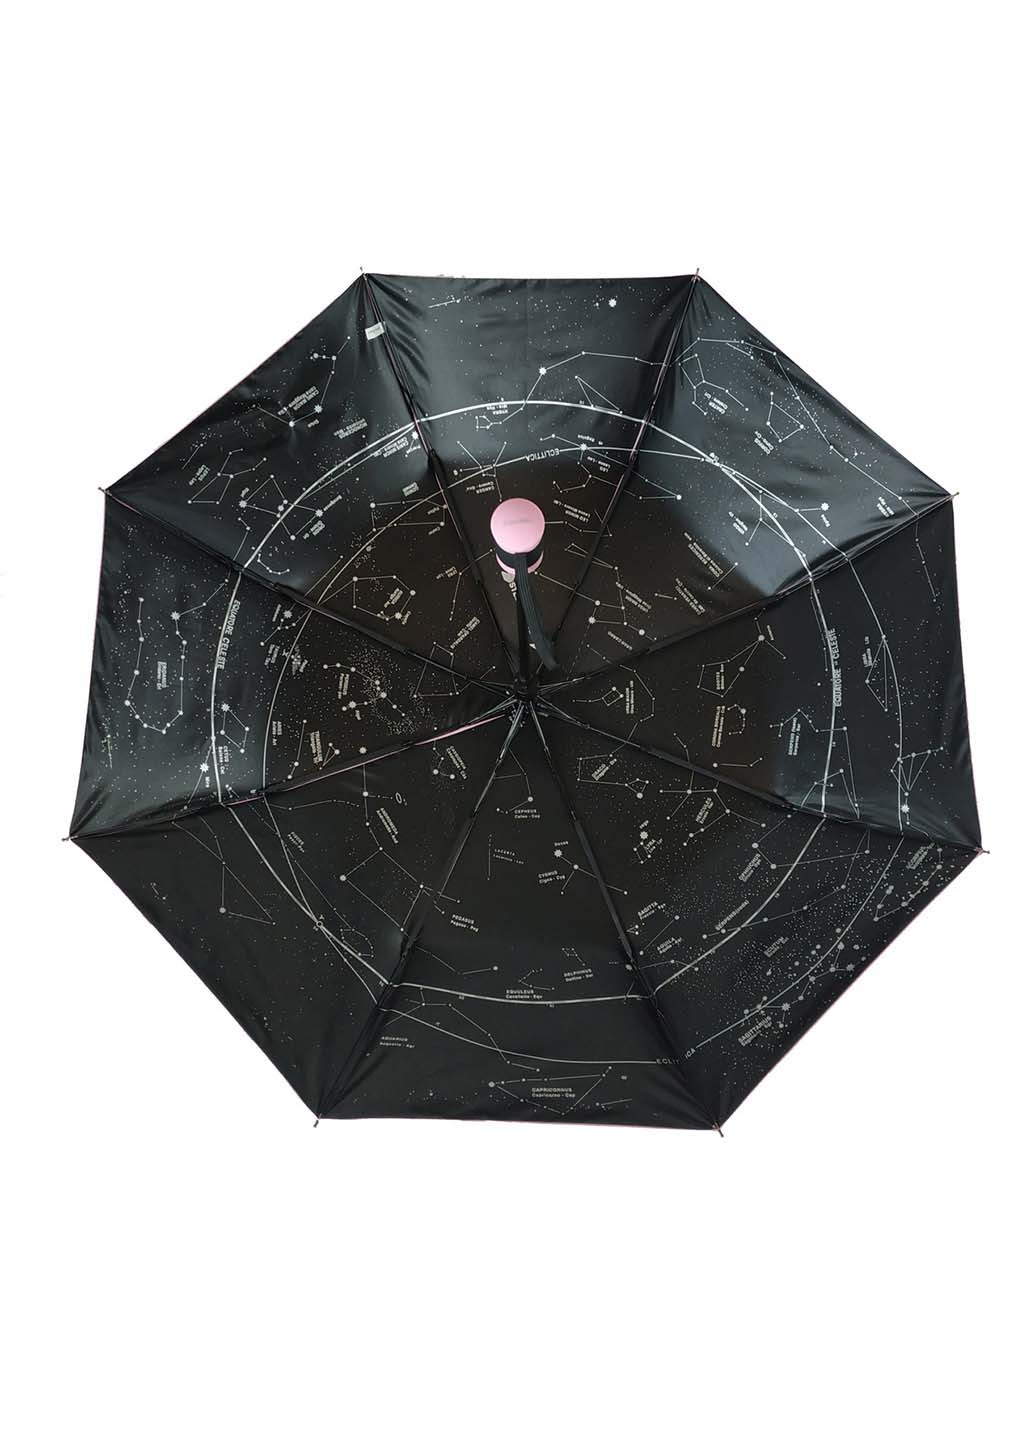 Зонт Max 3065-1 складной розовый